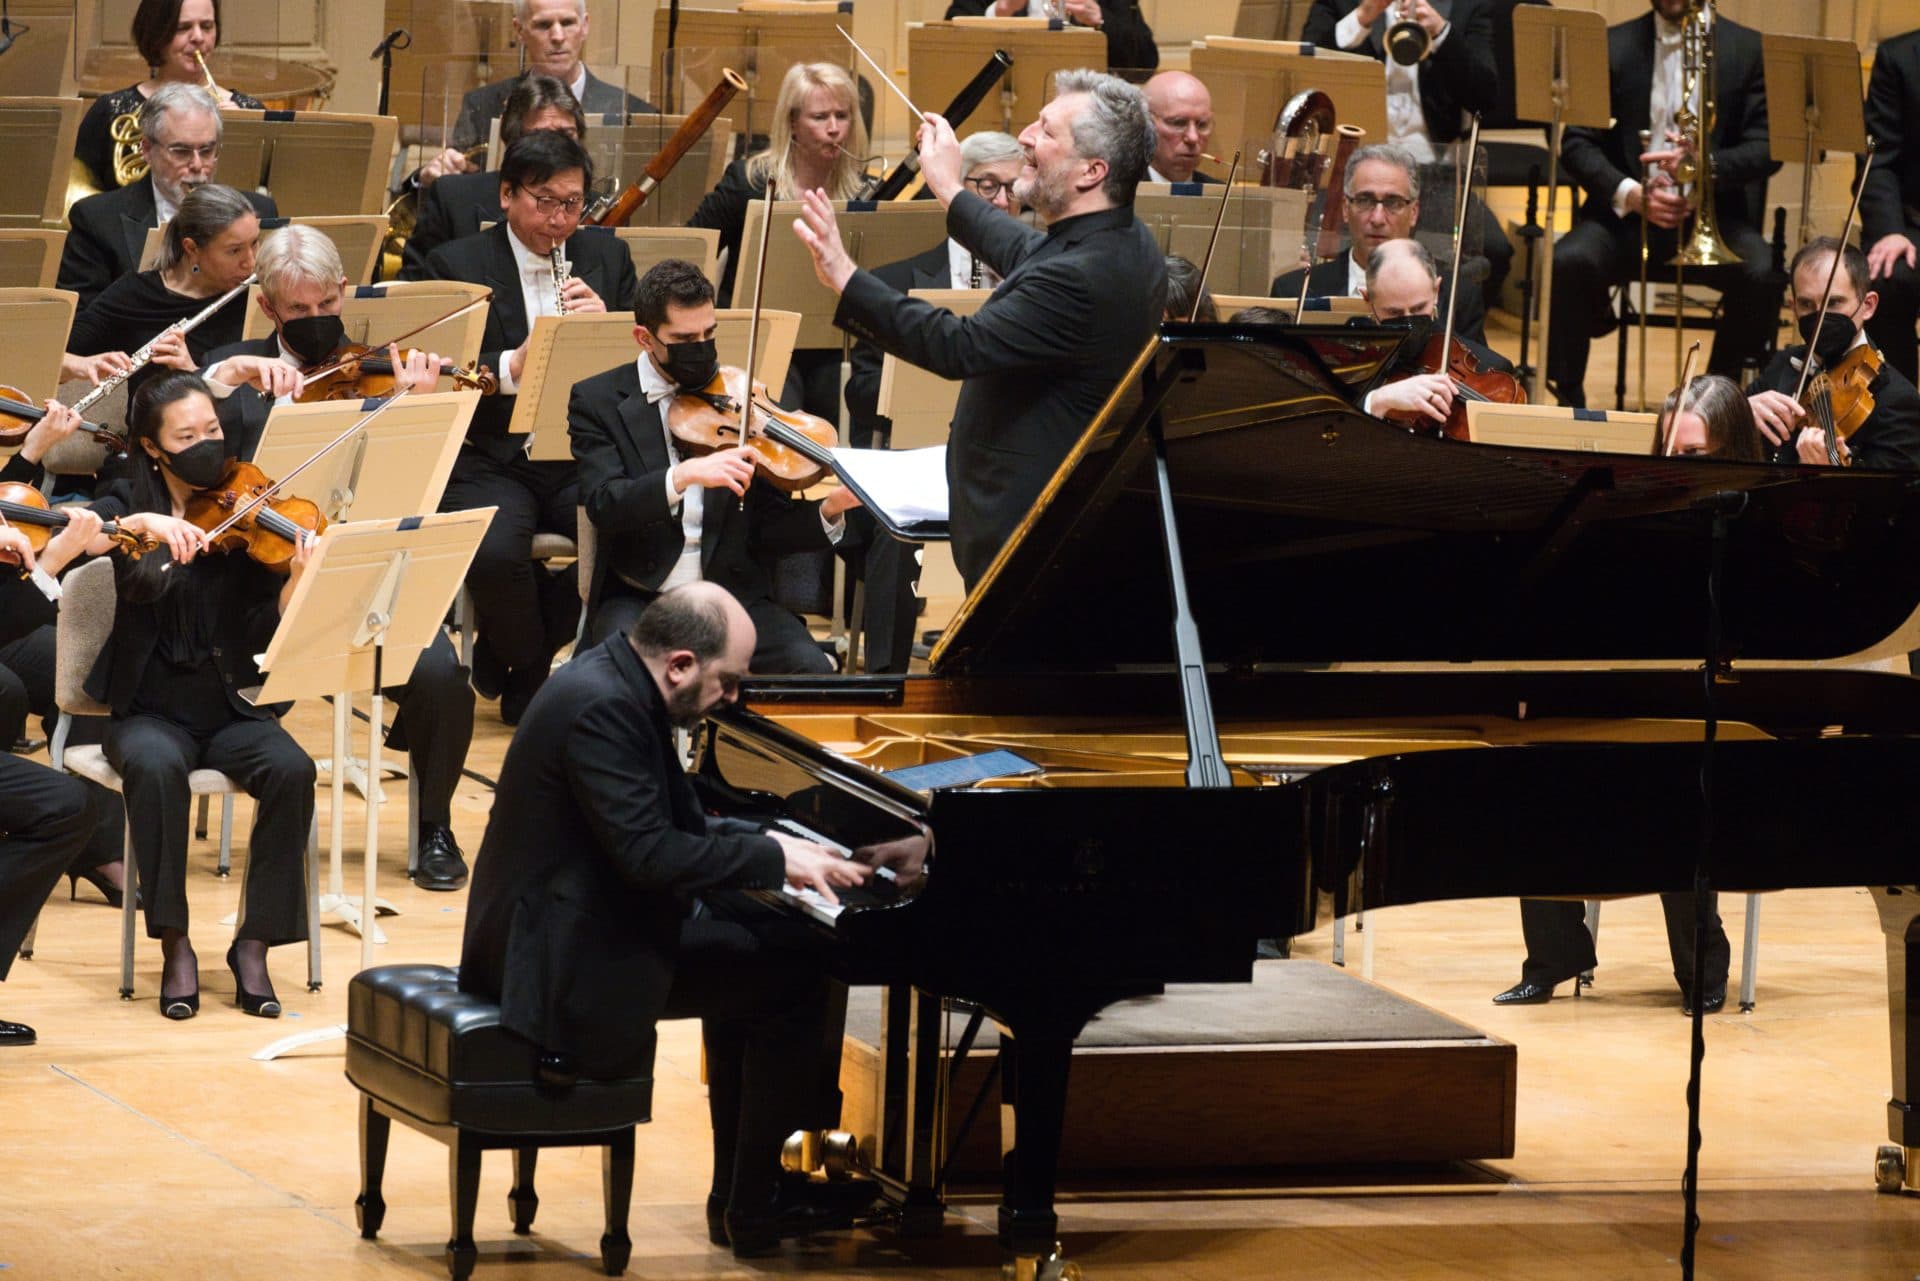 Le pianiste Kirill Gerstein et Thomas Adès interprètent le Concerto pour piano et orchestre d'Adès.  (Avec l'aimable autorisation d'Hilary Scott)